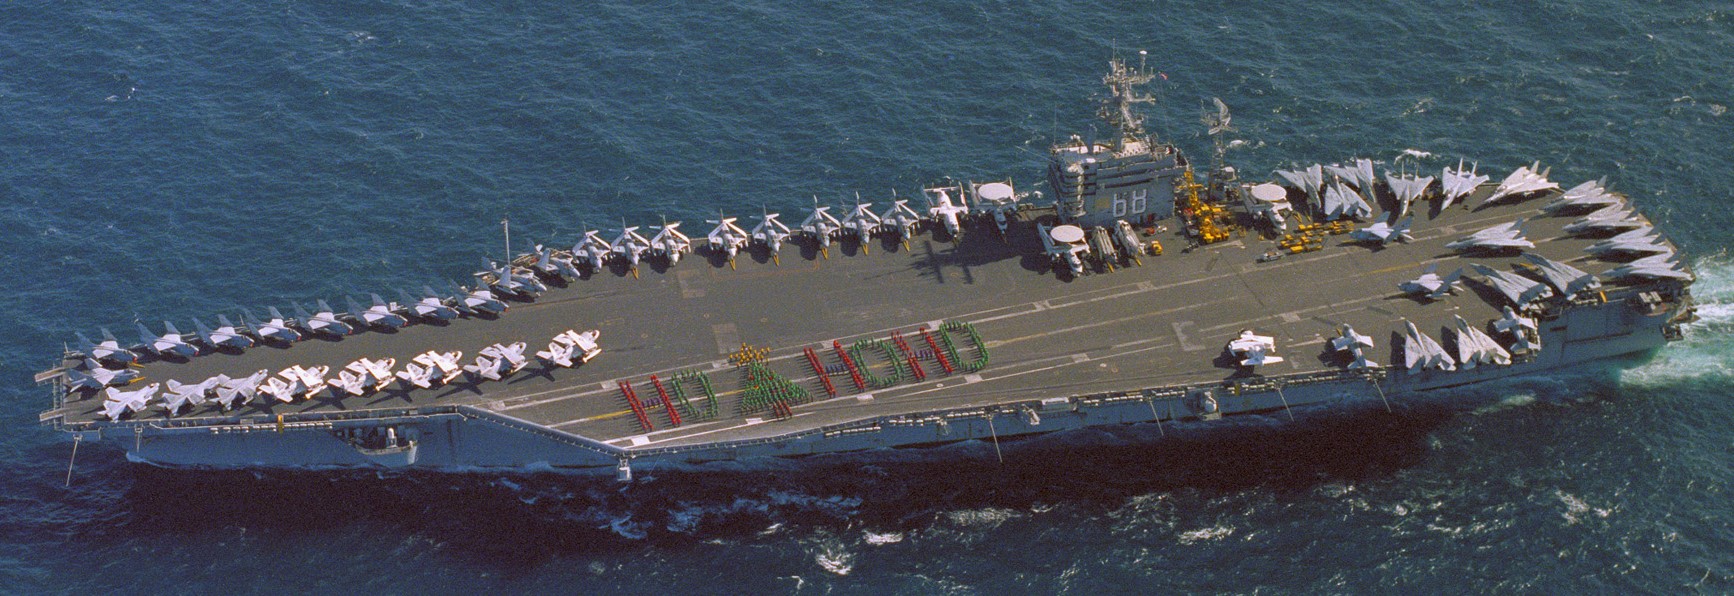 cvn-68 uss nimitz aircraft carrier air wing cvw-9 us navy 59